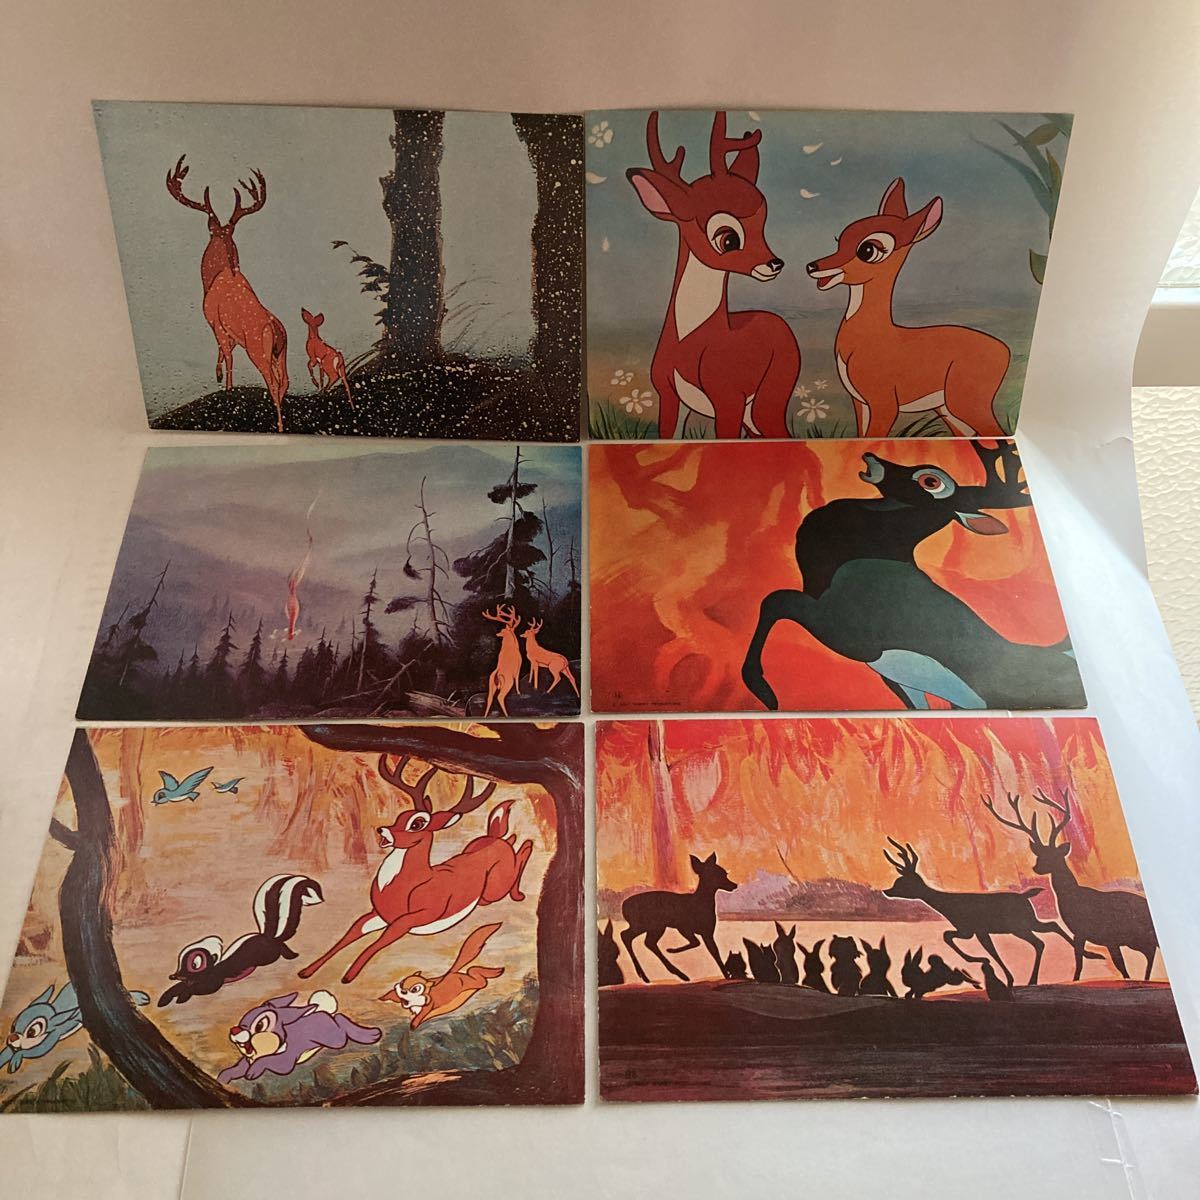 * Epo k фирменный Family бумажные декорации Bambi сиденье запись есть ... . состояние хорошо нет. изображен на фотографии Disney шедевр театр подлинная вещь!GM802